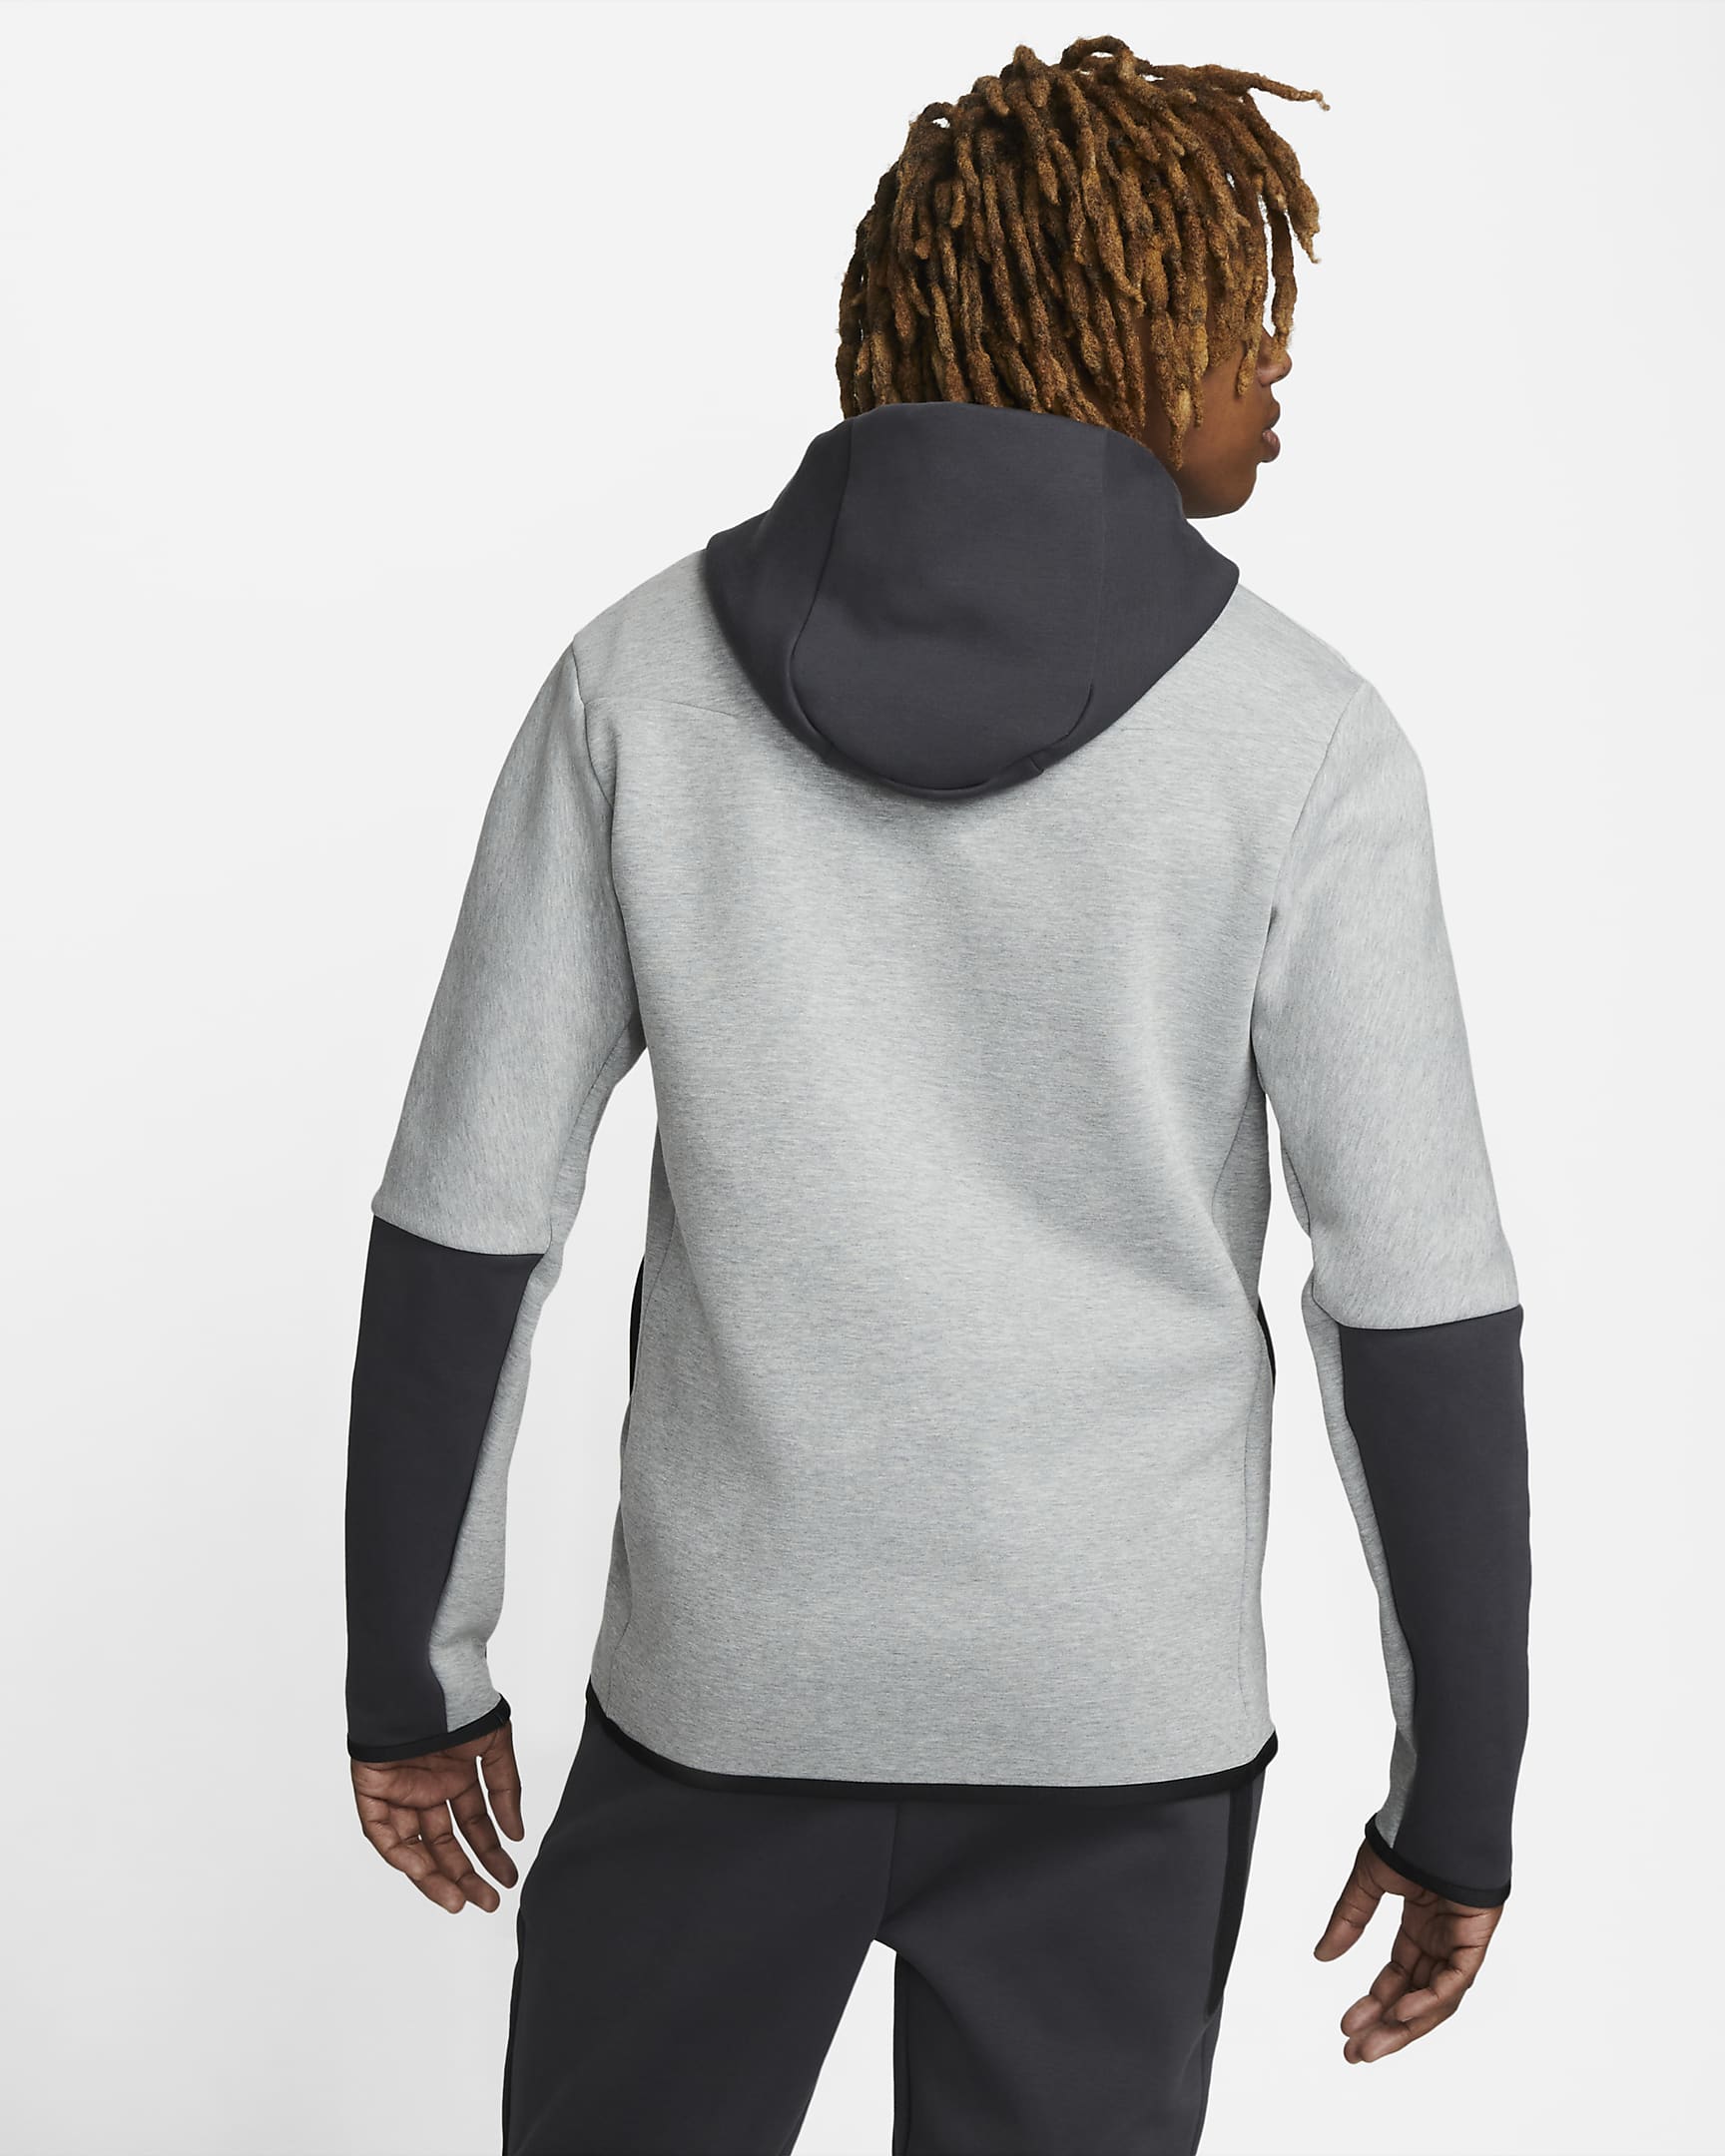 Veste à capuche Nike Tech Fleece - Gris/Vert